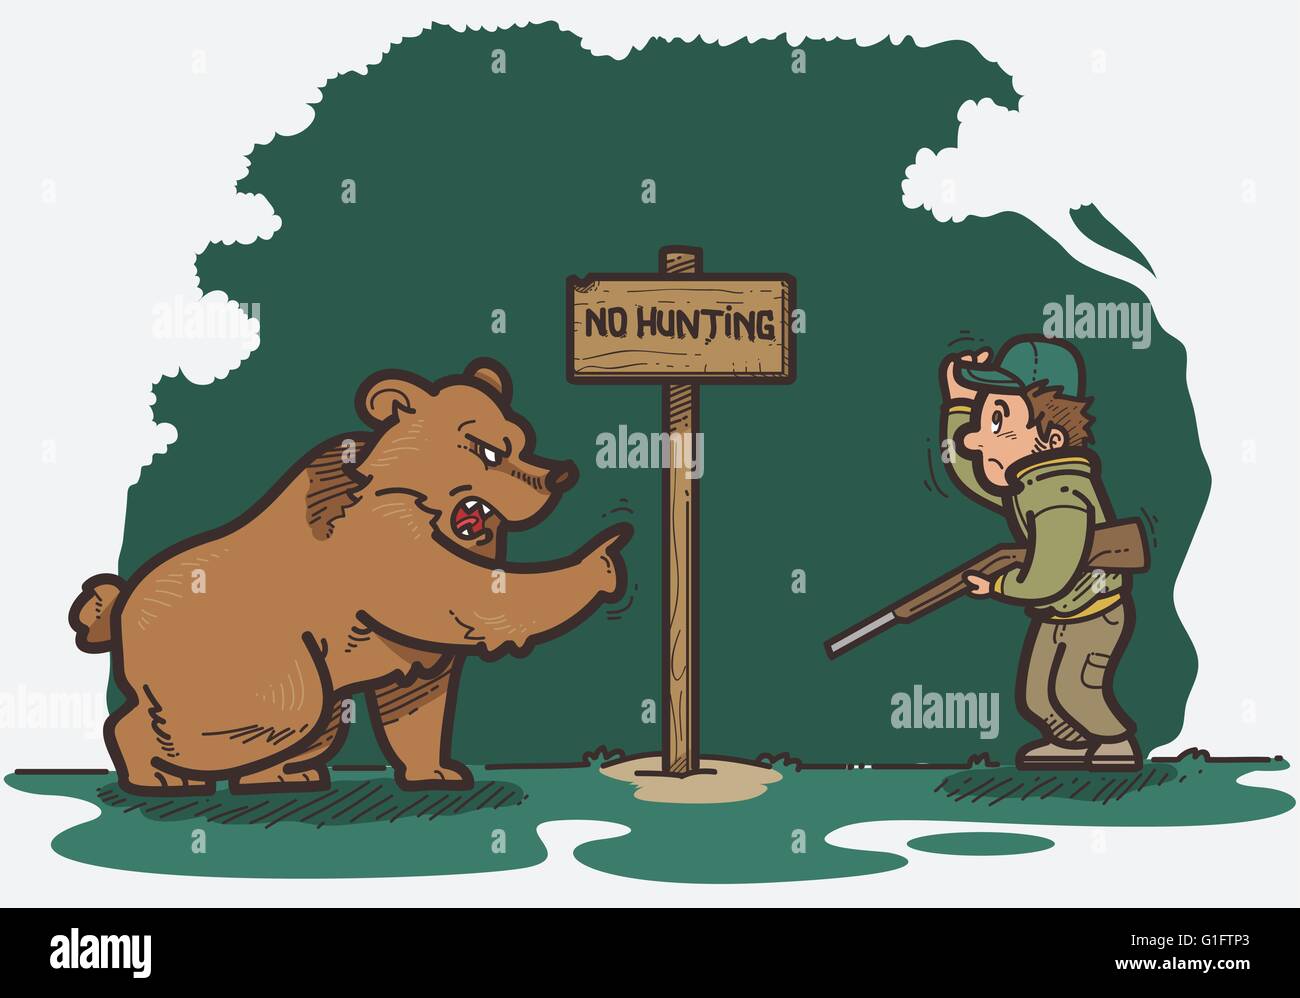 Vector illustration of bear show hunter no hunt sign board Stock Vector